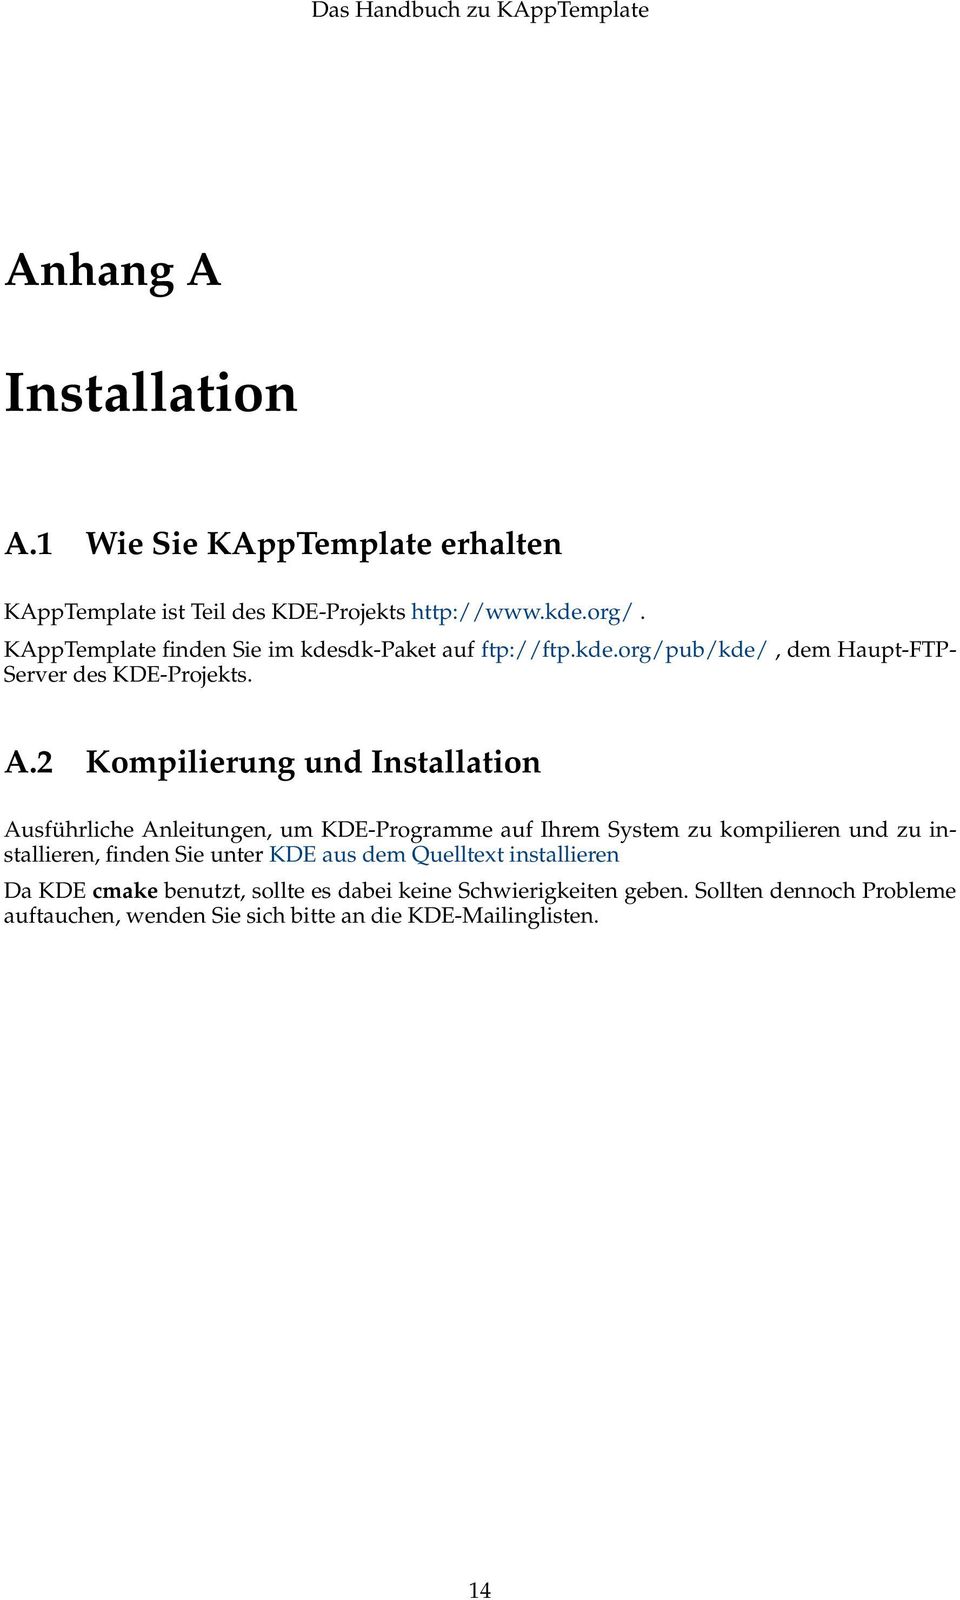 2 Kompilierung und Installation Ausführliche Anleitungen, um KDE-Programme auf Ihrem System zu kompilieren und zu installieren, finden Sie